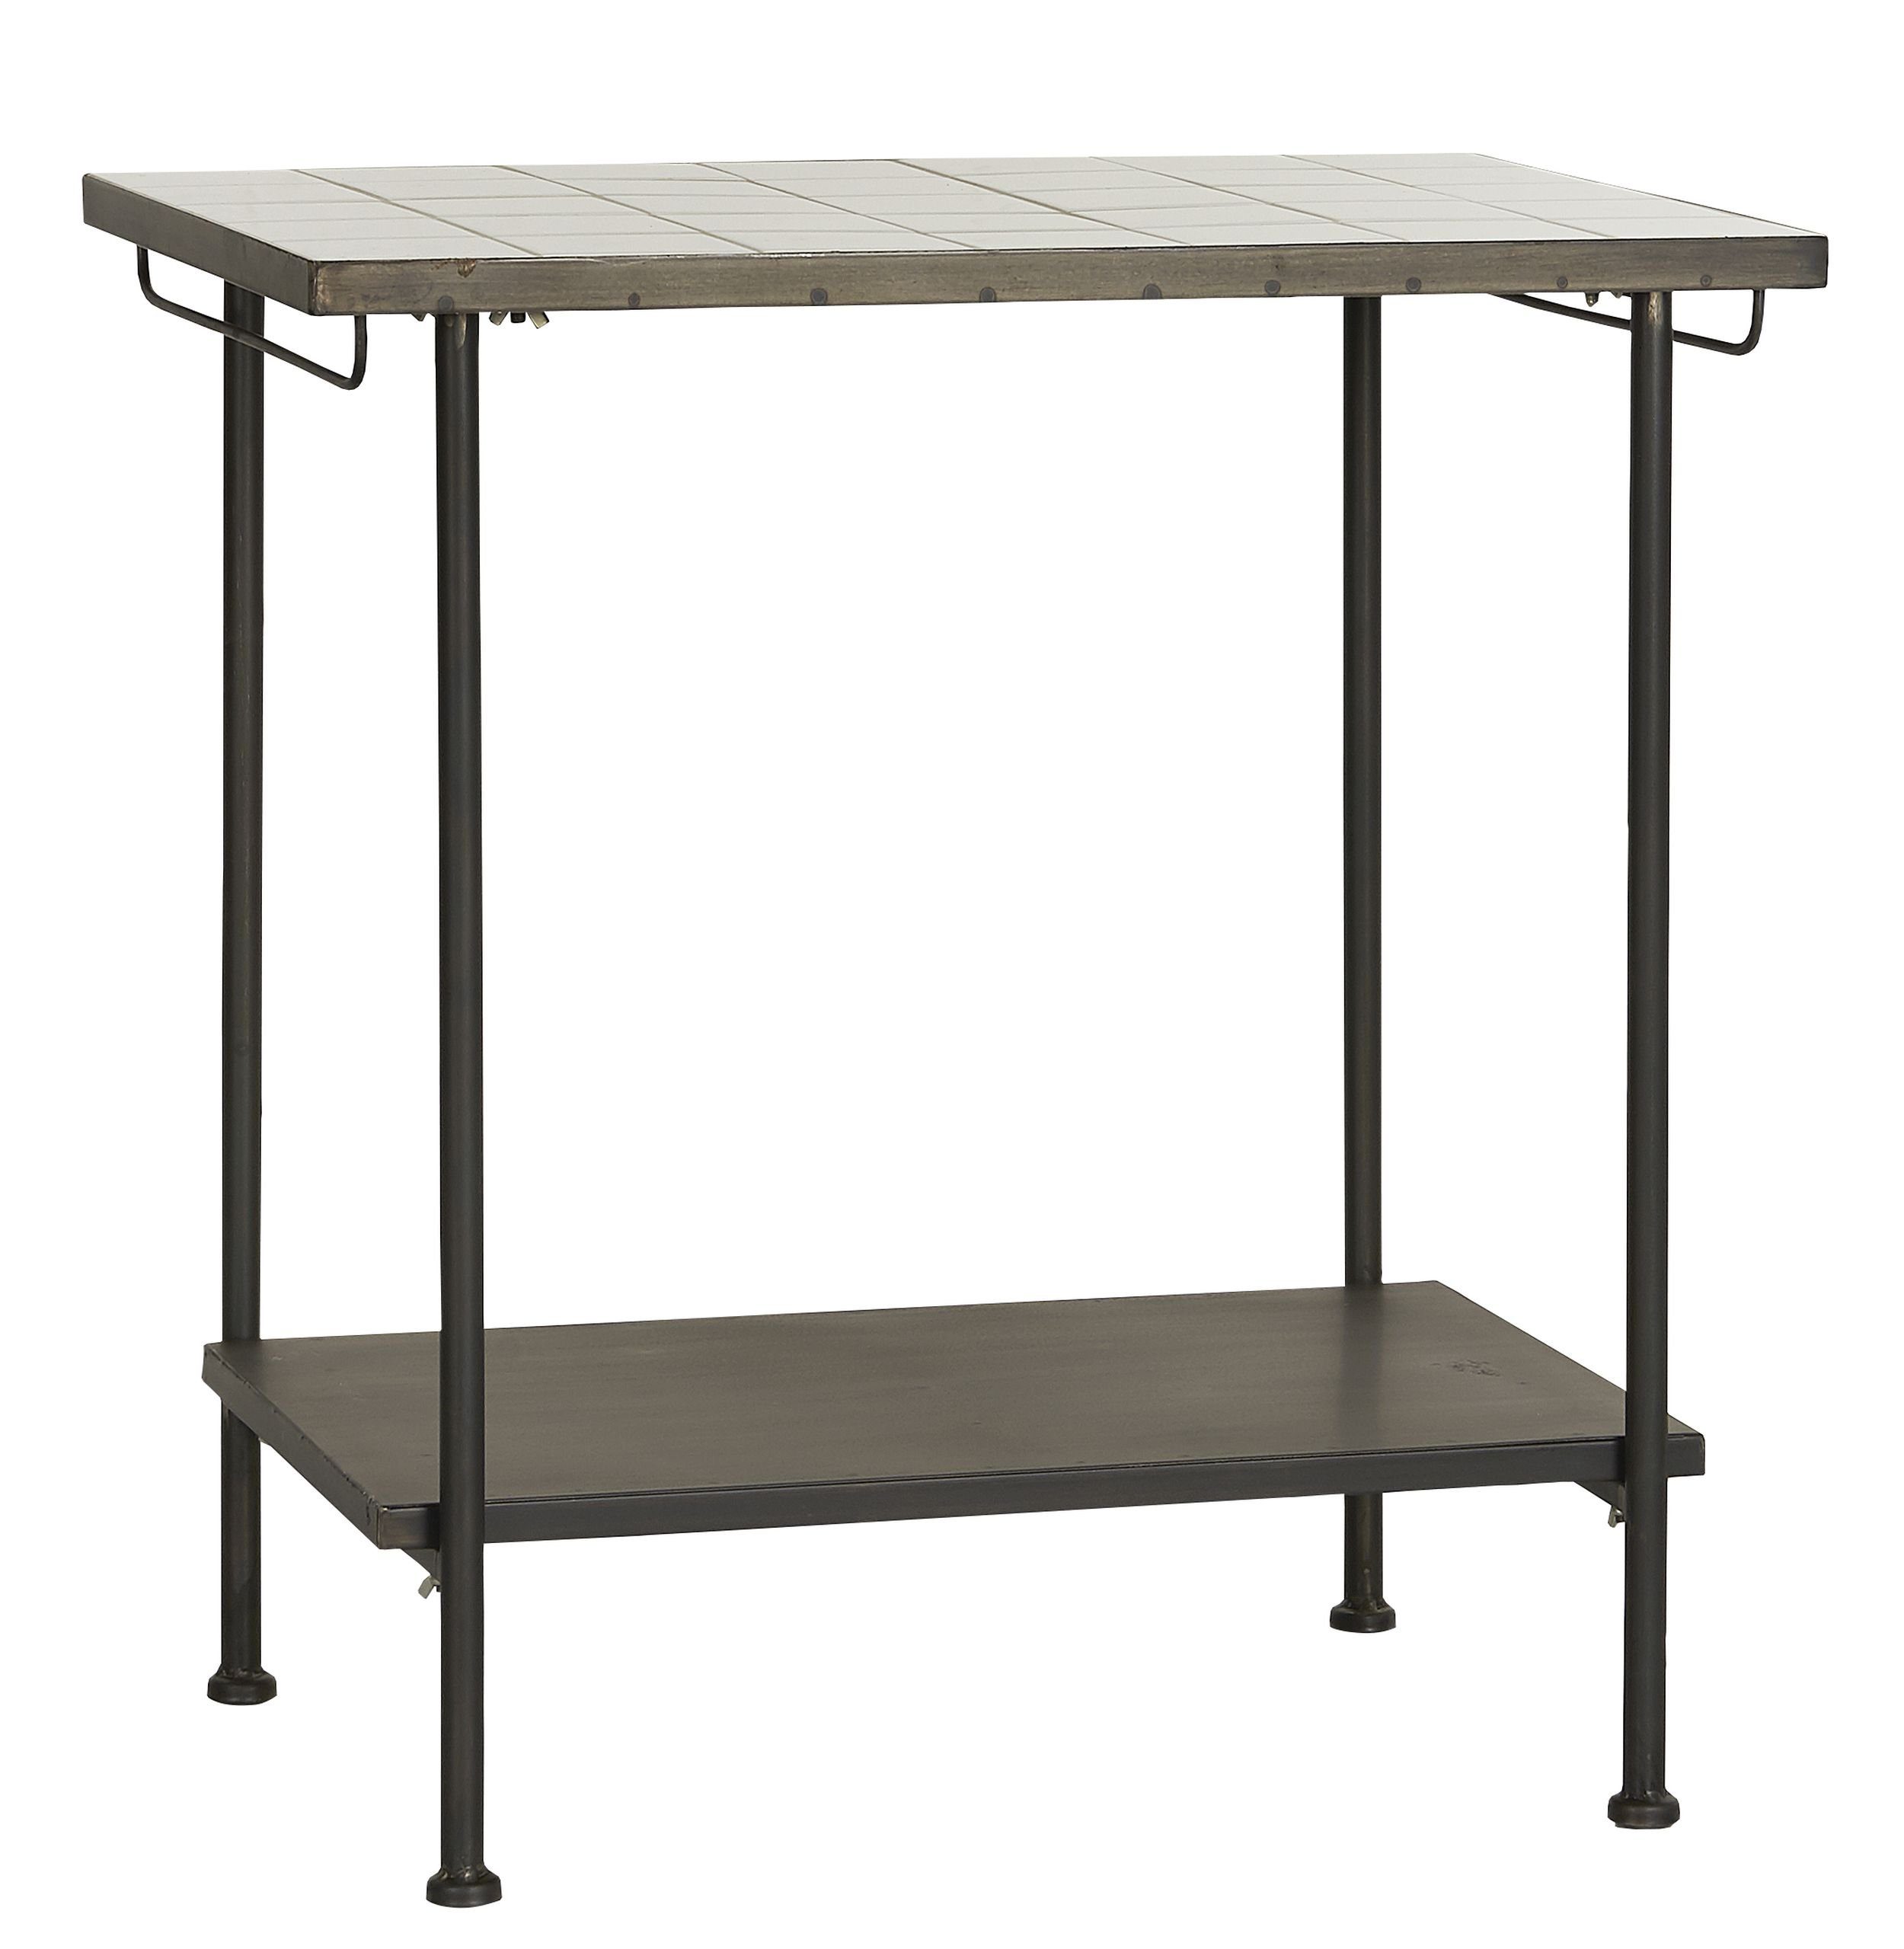 Ib Beistelltisch Fliesentisch Beistelltisch Arbeitstisch Fliesen Ib Laursen Tisch Metall